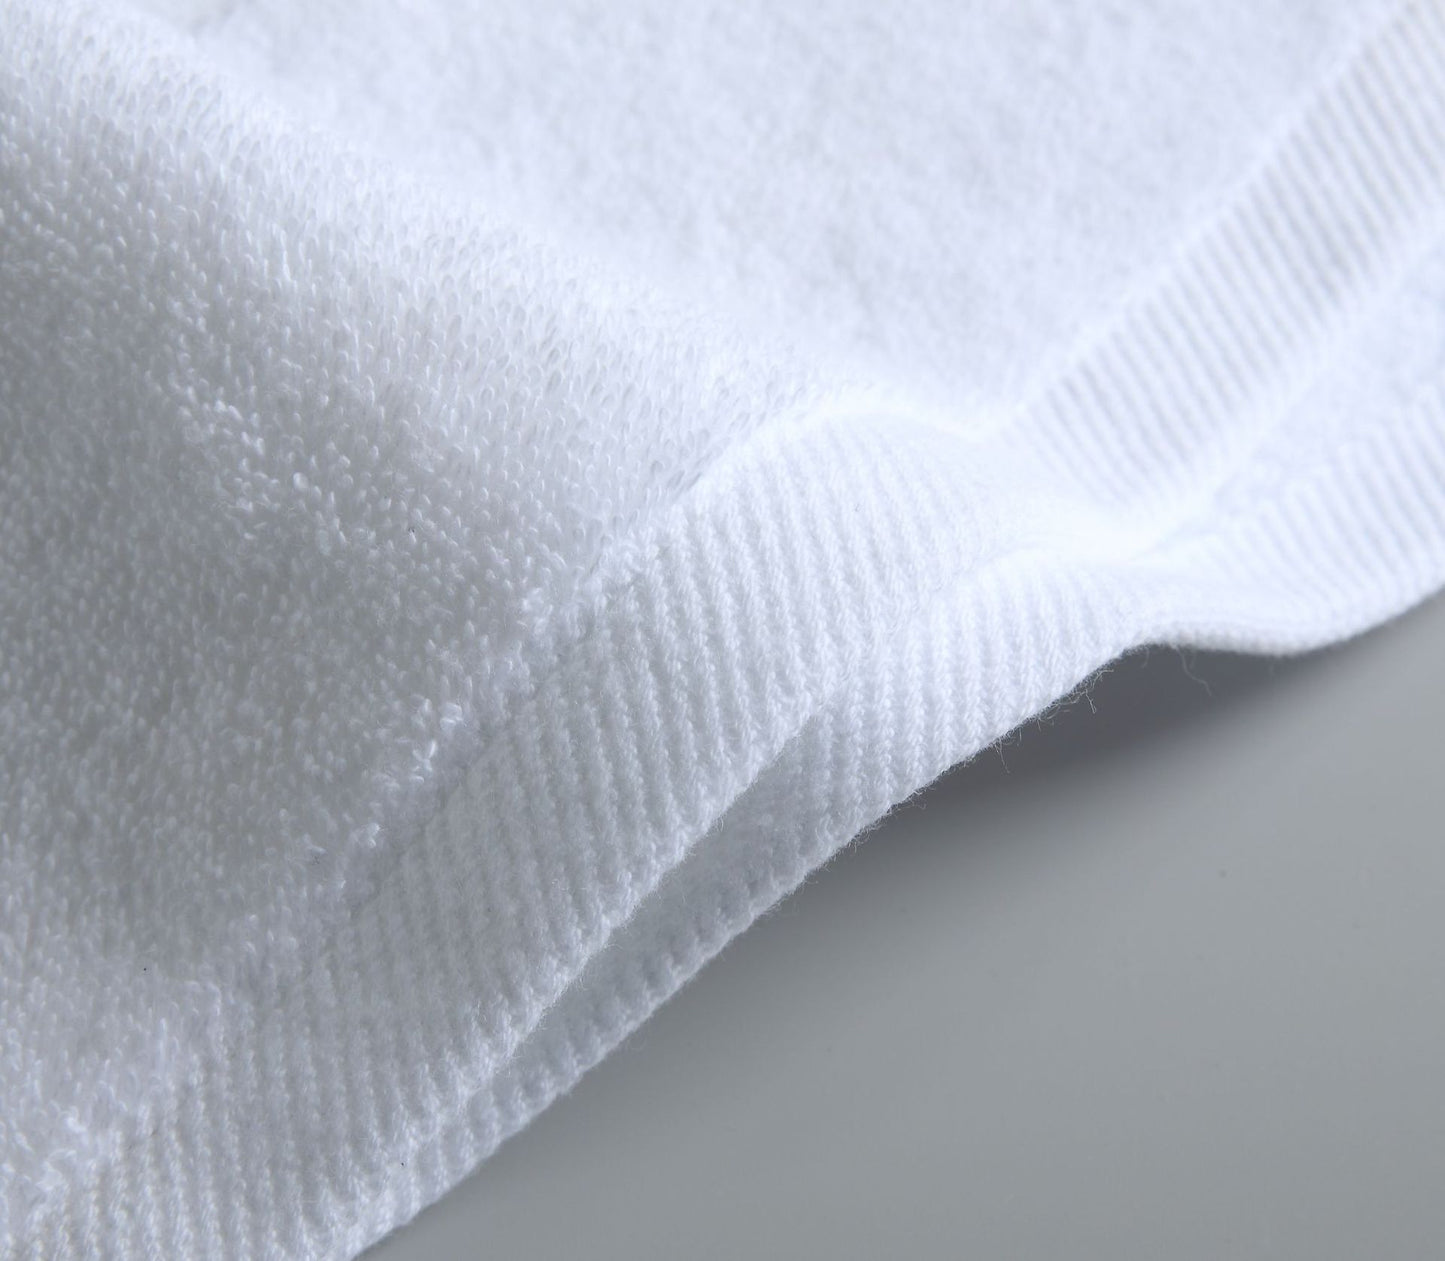 浴巾 70 x 140 厘米 600 GSM 100% 棉 速乾高吸水性 禮品